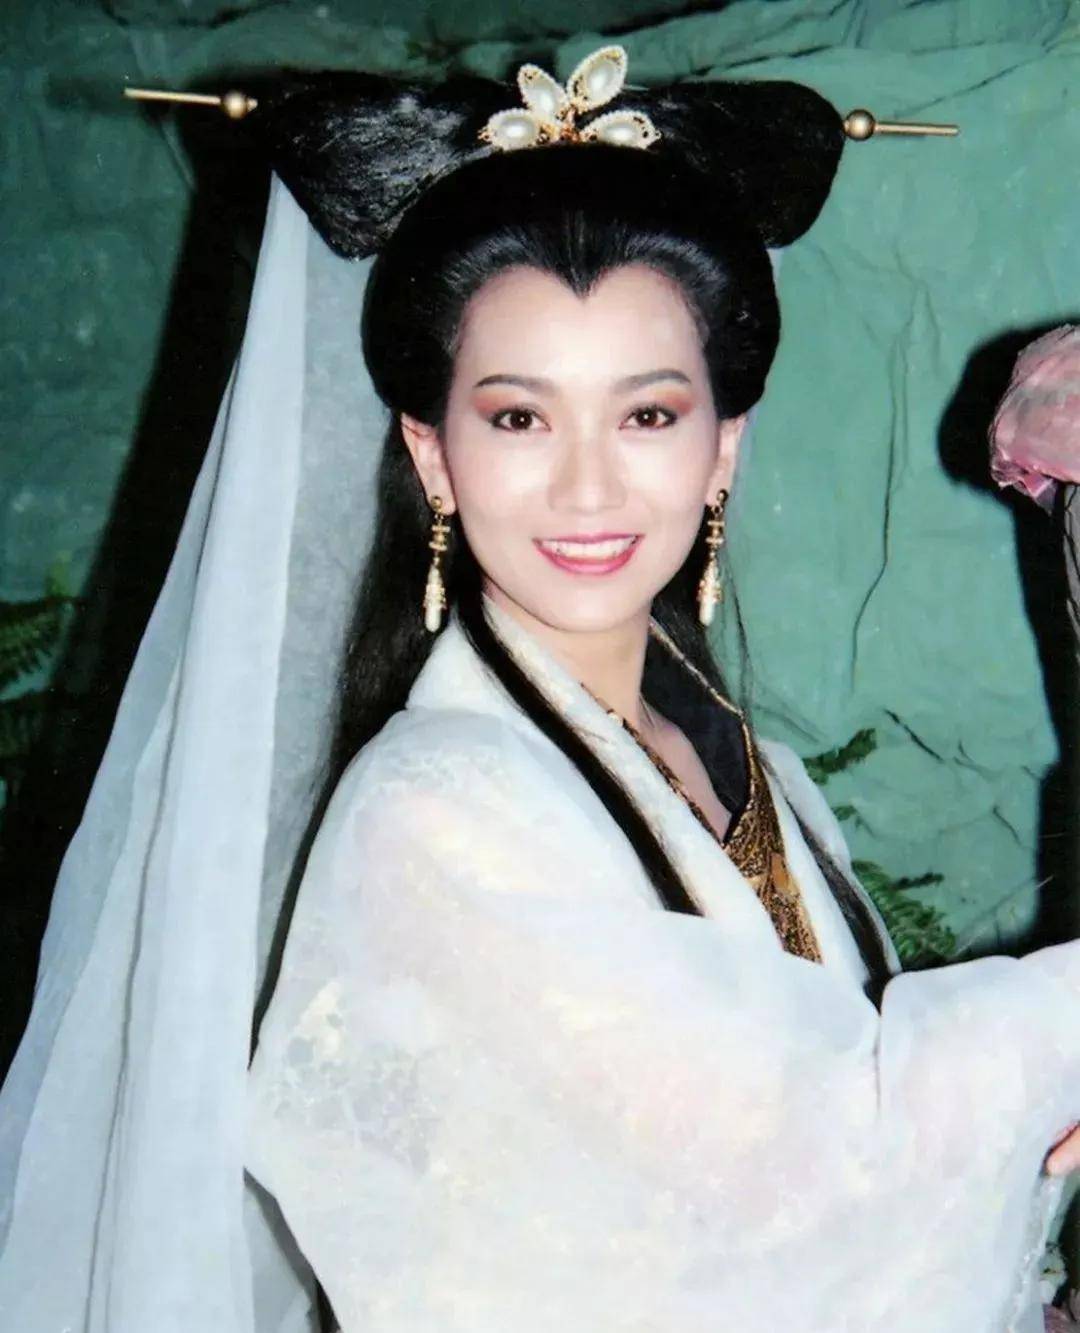 第二位,黄圣依,扮演了《白蛇传说》中的白娘子